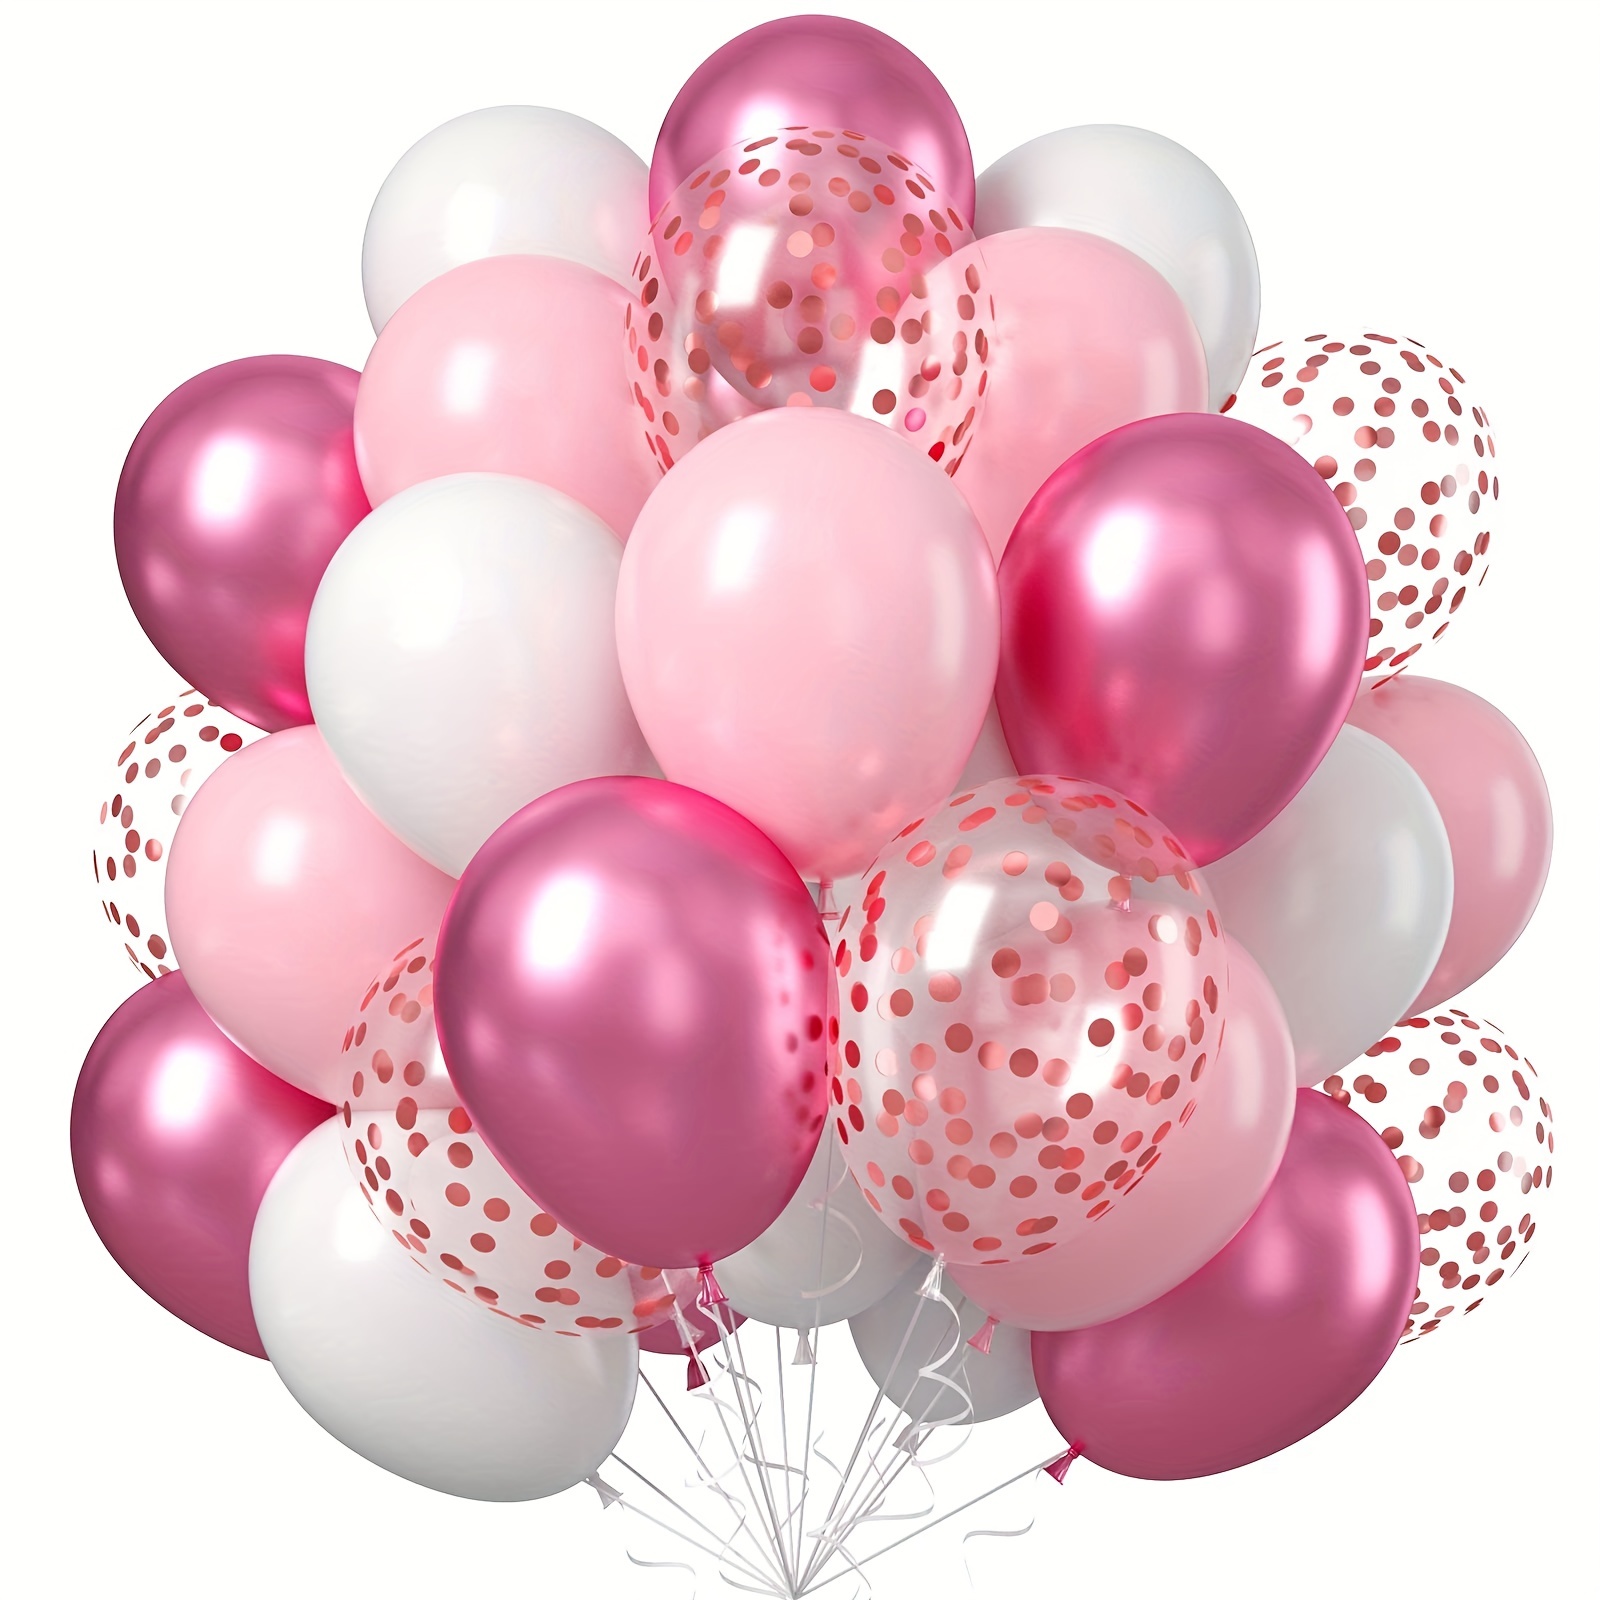 Globos cromados de color rosa intenso de 12 pulgadas, paquete de 50 globos  gruesos de color rosa metálico, globos de cumpleaños brillantes, decoración